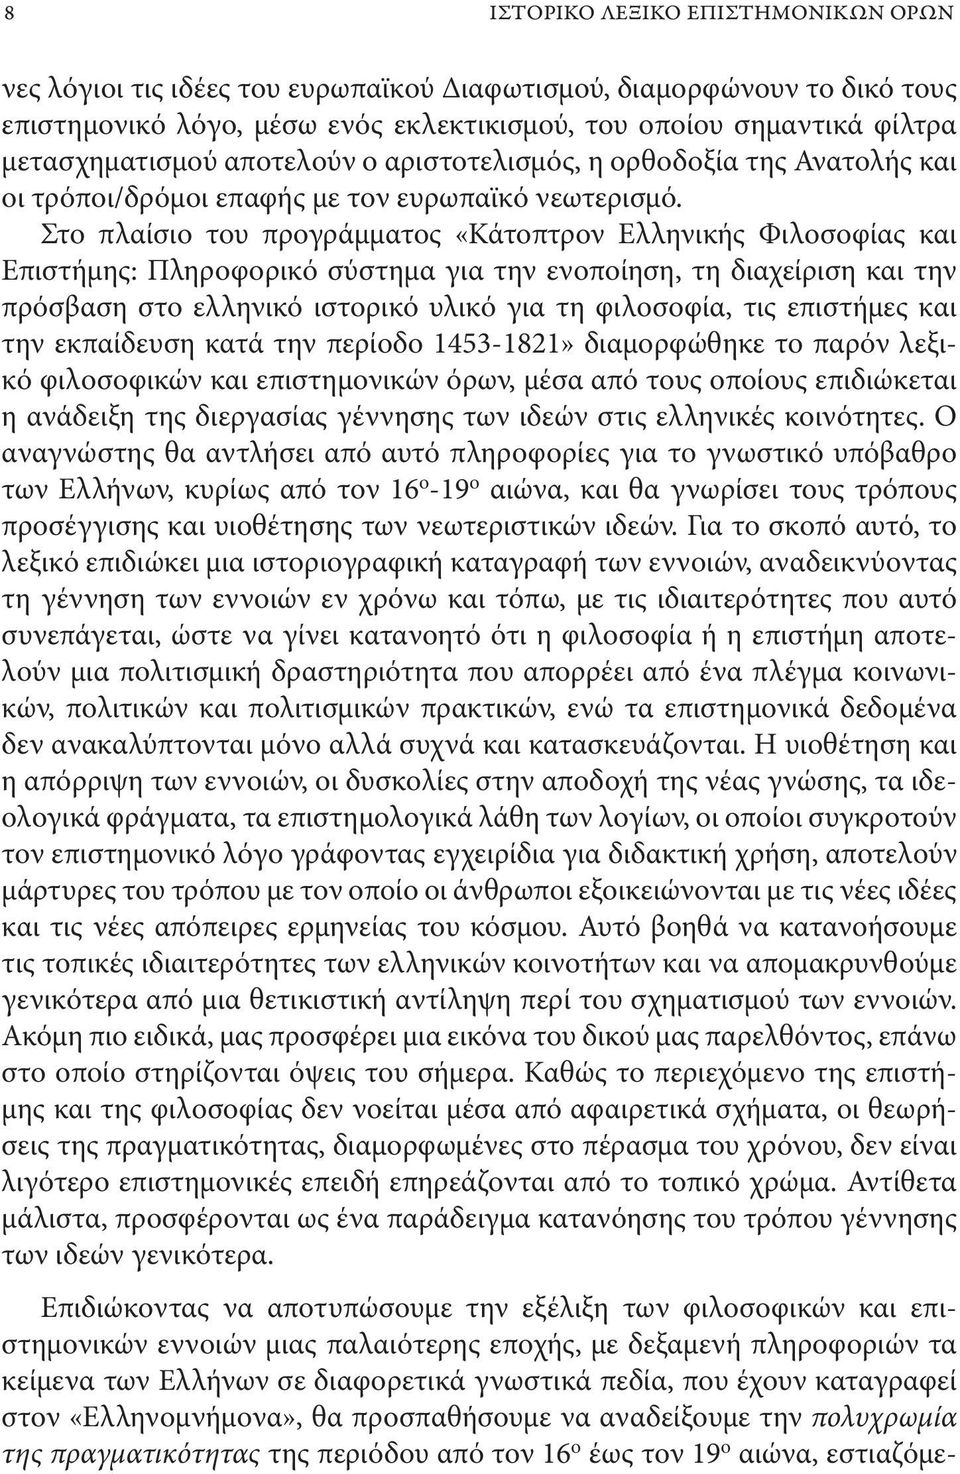 Στο πλαίσιο του προγράμματος «Κάτοπτρον Ελληνικής Φιλοσοφίας και Επιστήμης: Πληροφορικό σύστημα για την ενοποίηση, τη διαχείριση και την πρόσβαση στο ελληνικό ιστορικό υλικό για τη φιλοσοφία, τις